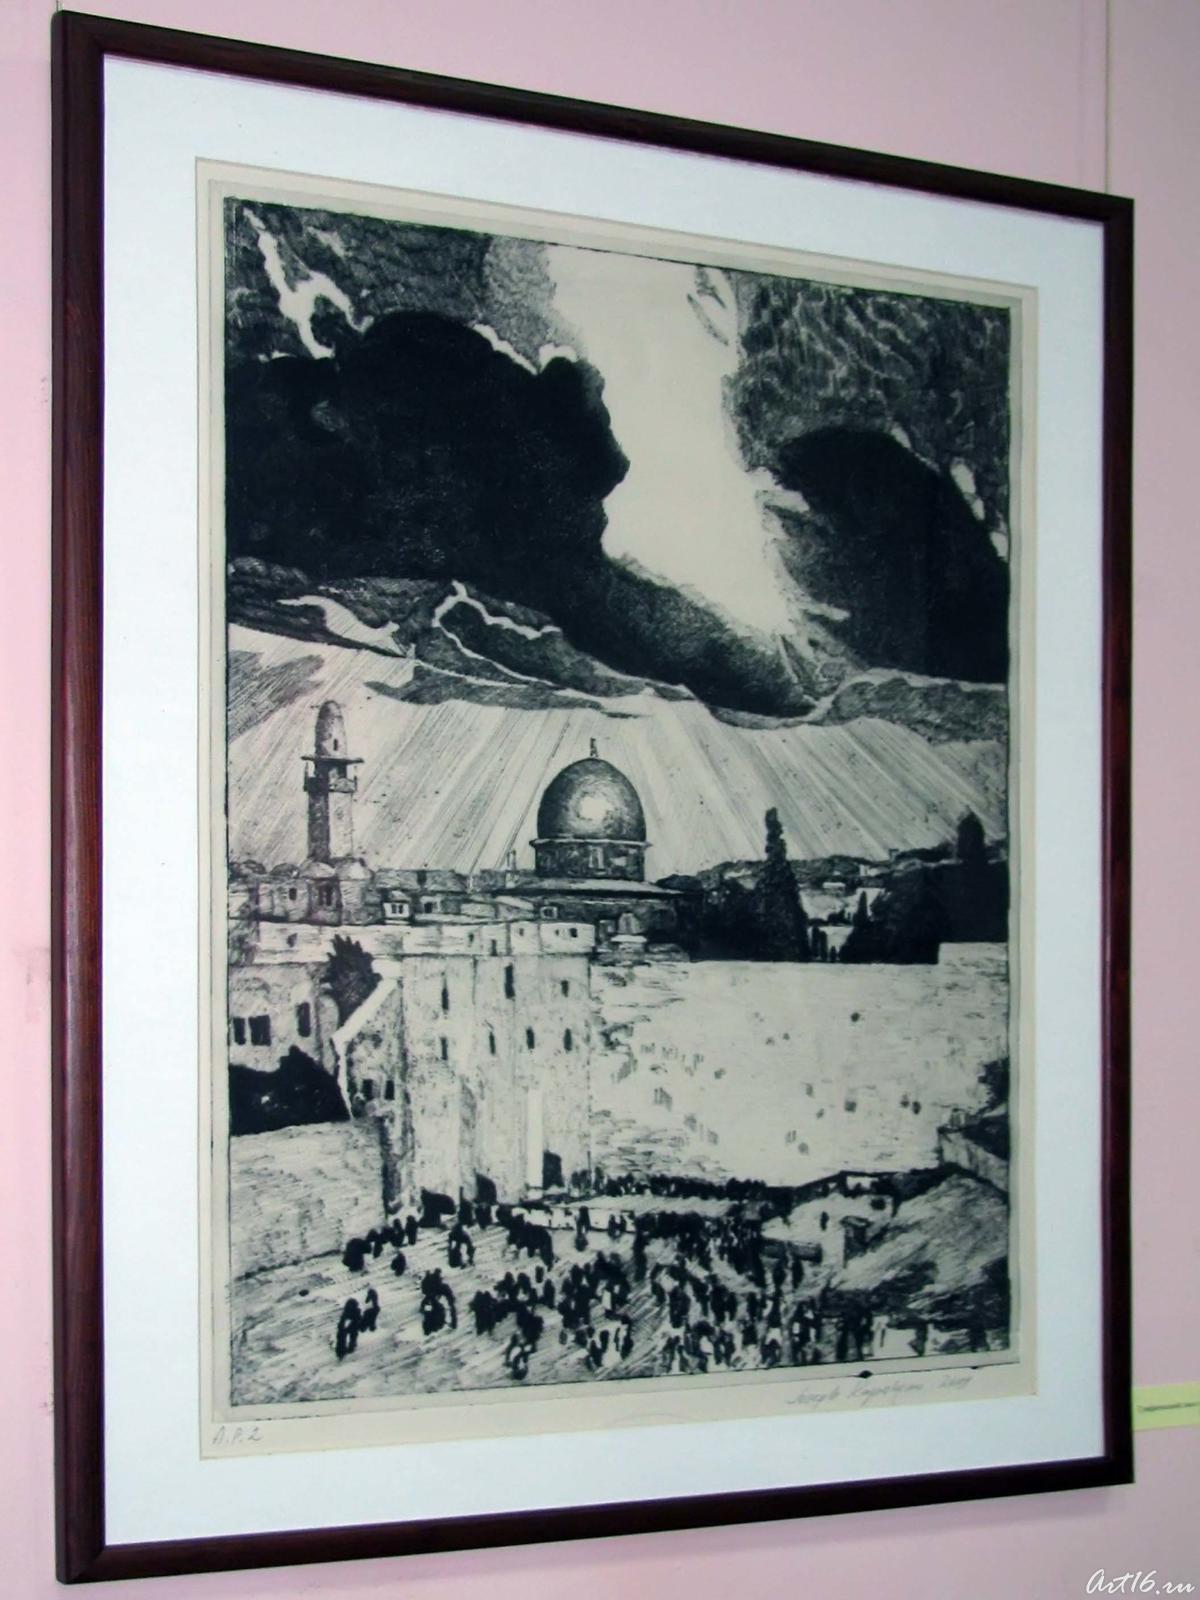 Фото №58192. Графический лист из серии "Старый Иерусалим" (1)